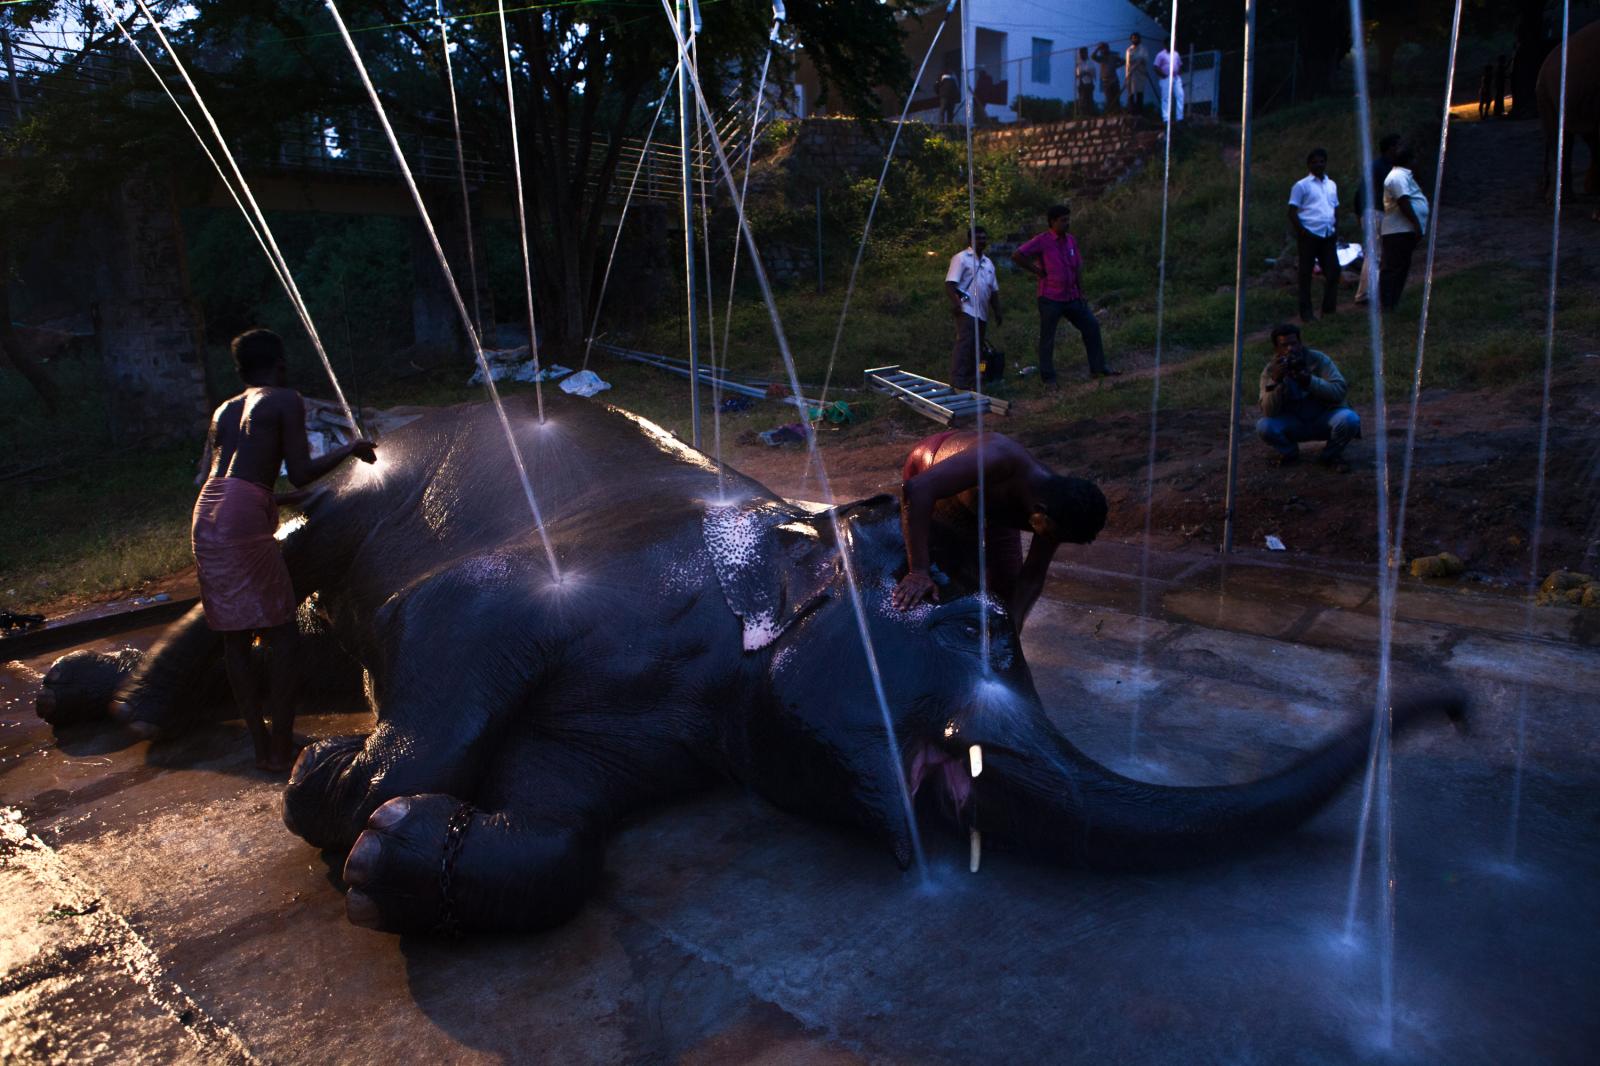 Image from Temple elephant rejuvenation camp-DER SPIEGEL 